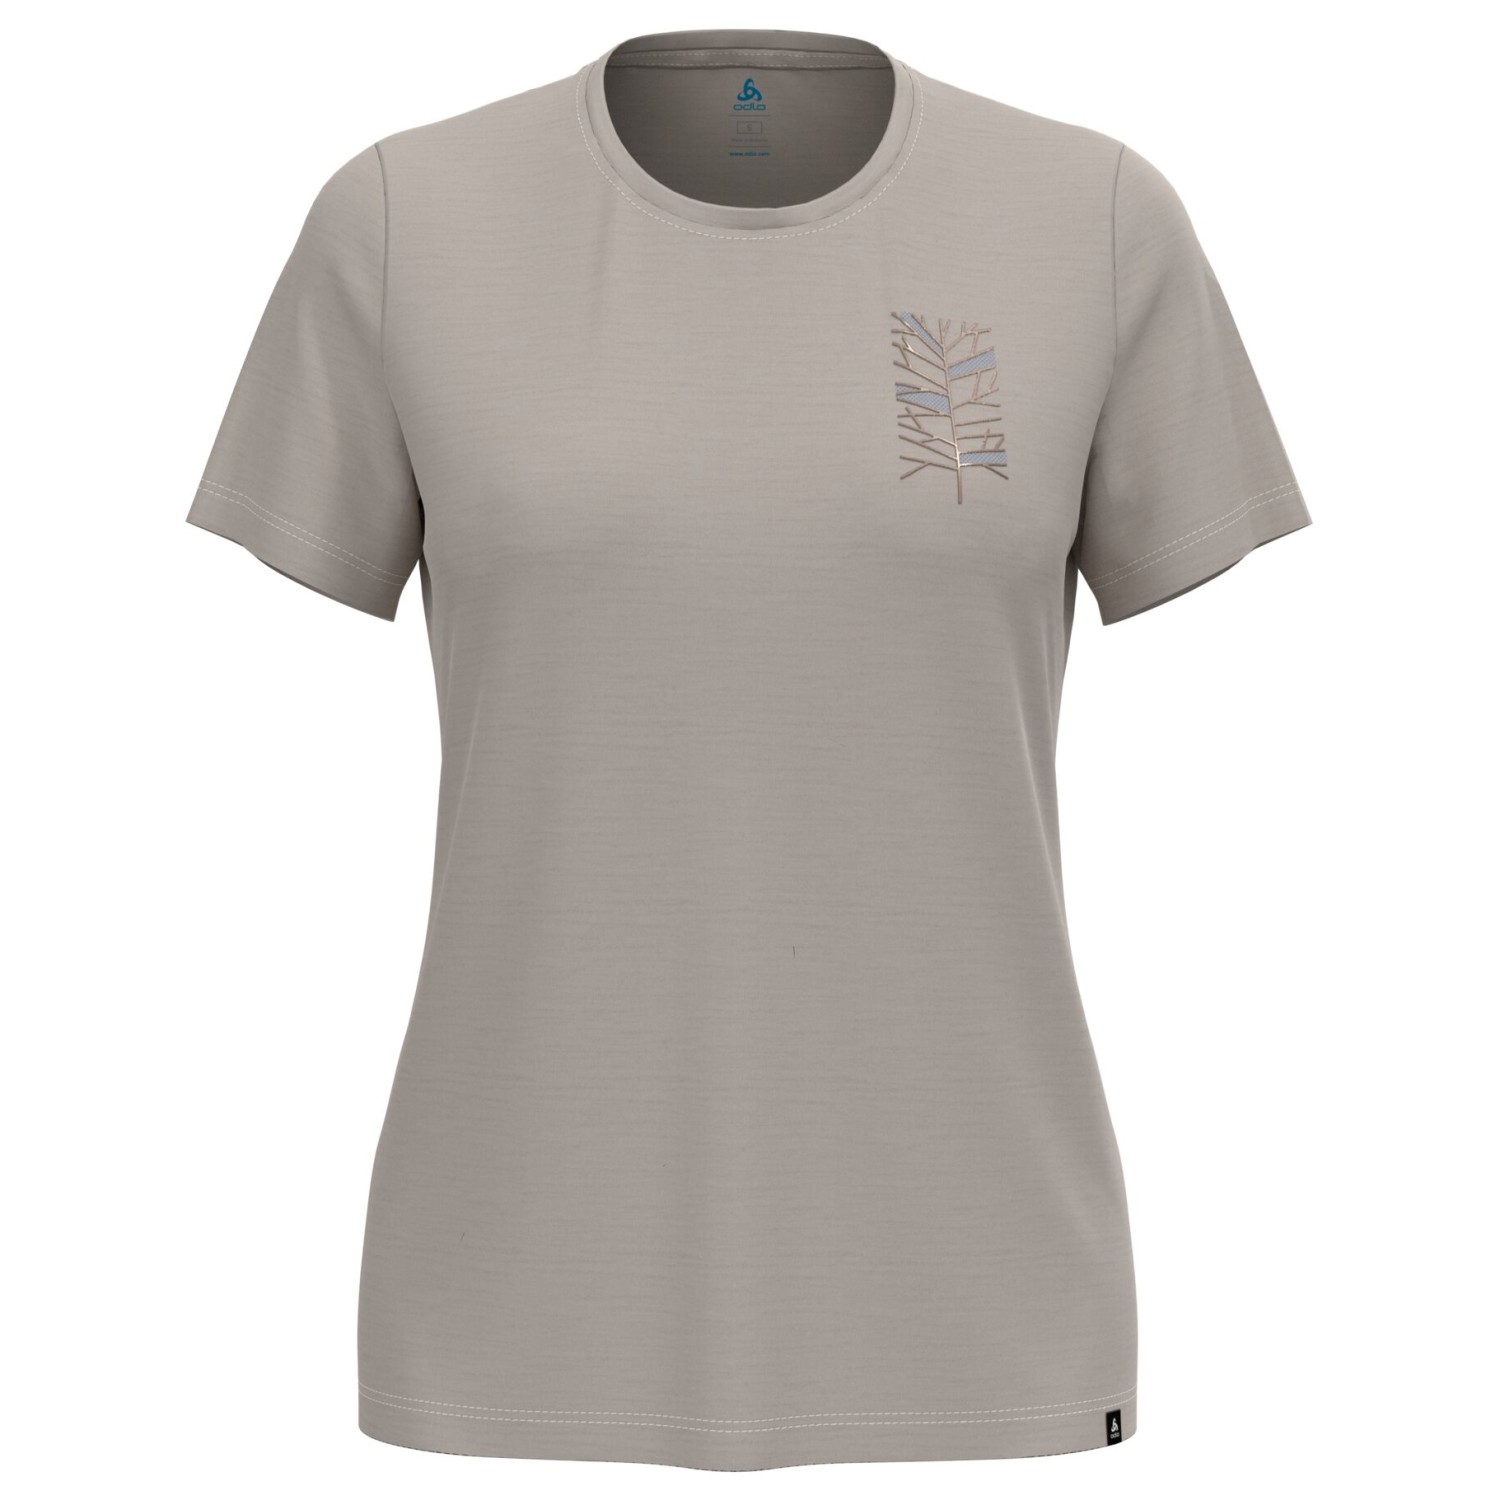 Рубашка из мериноса Odlo Women's Ascent Merino 160 Tree Crew Neck S/S, цвет Silver Cloud